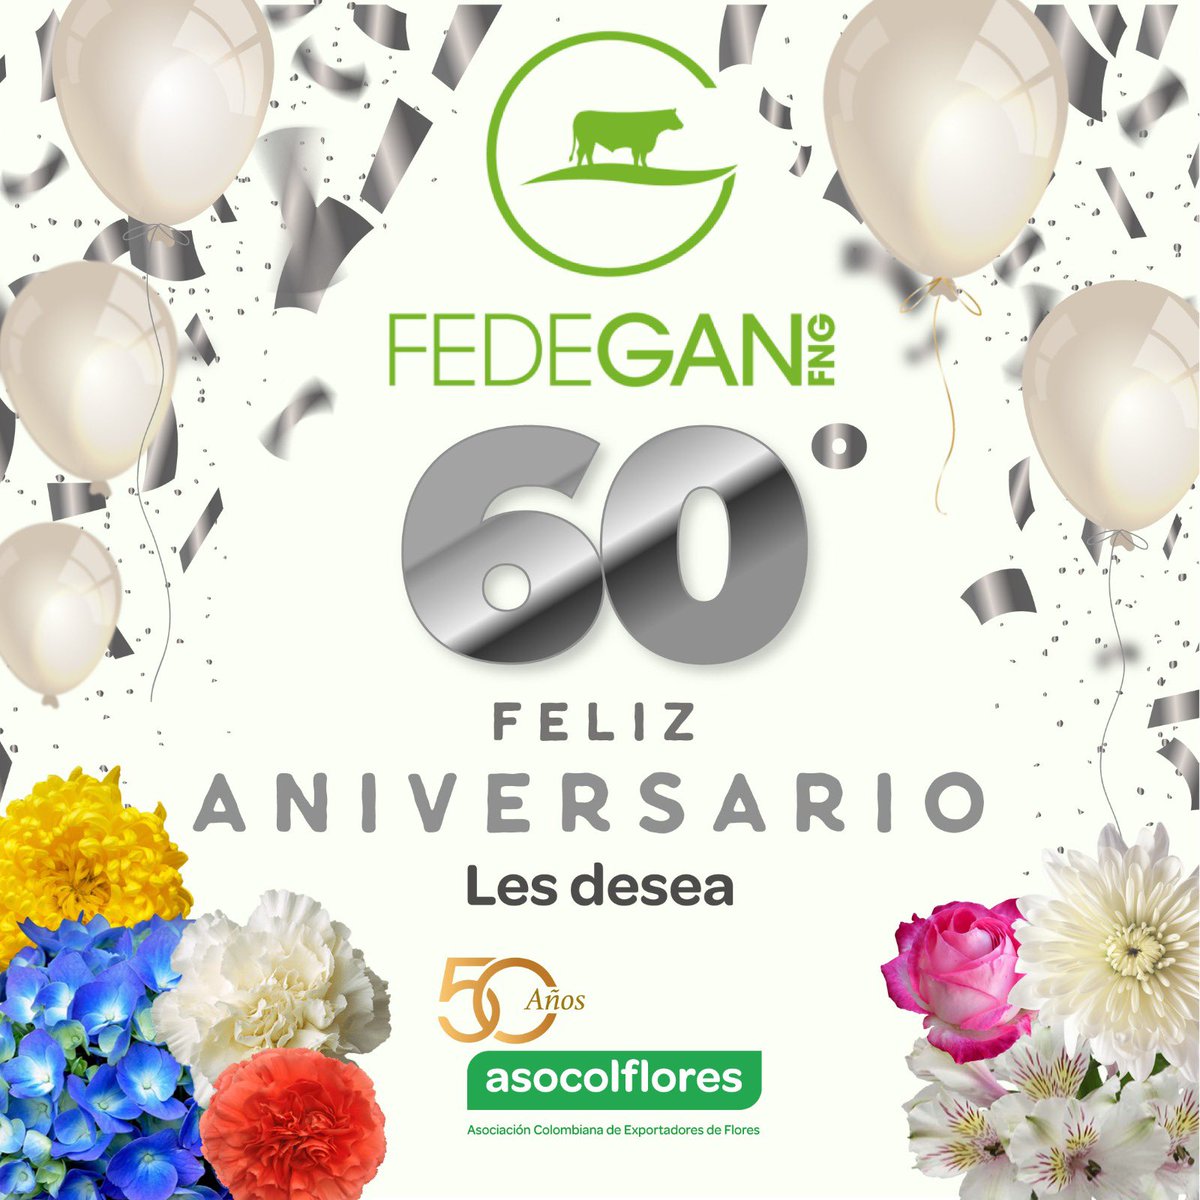 Desde @Asocolflores extendemos nuestras cálidas felicitaciones a @Fedegan en su sexagésimo aniversario. Que sigamos cultivando juntos un futuro próspero para el #campocolombiano. 🌸🌿🎉 #CreciendoJuntos #AgriculturaSostenible #Asocolflores #FlowersOfColombia